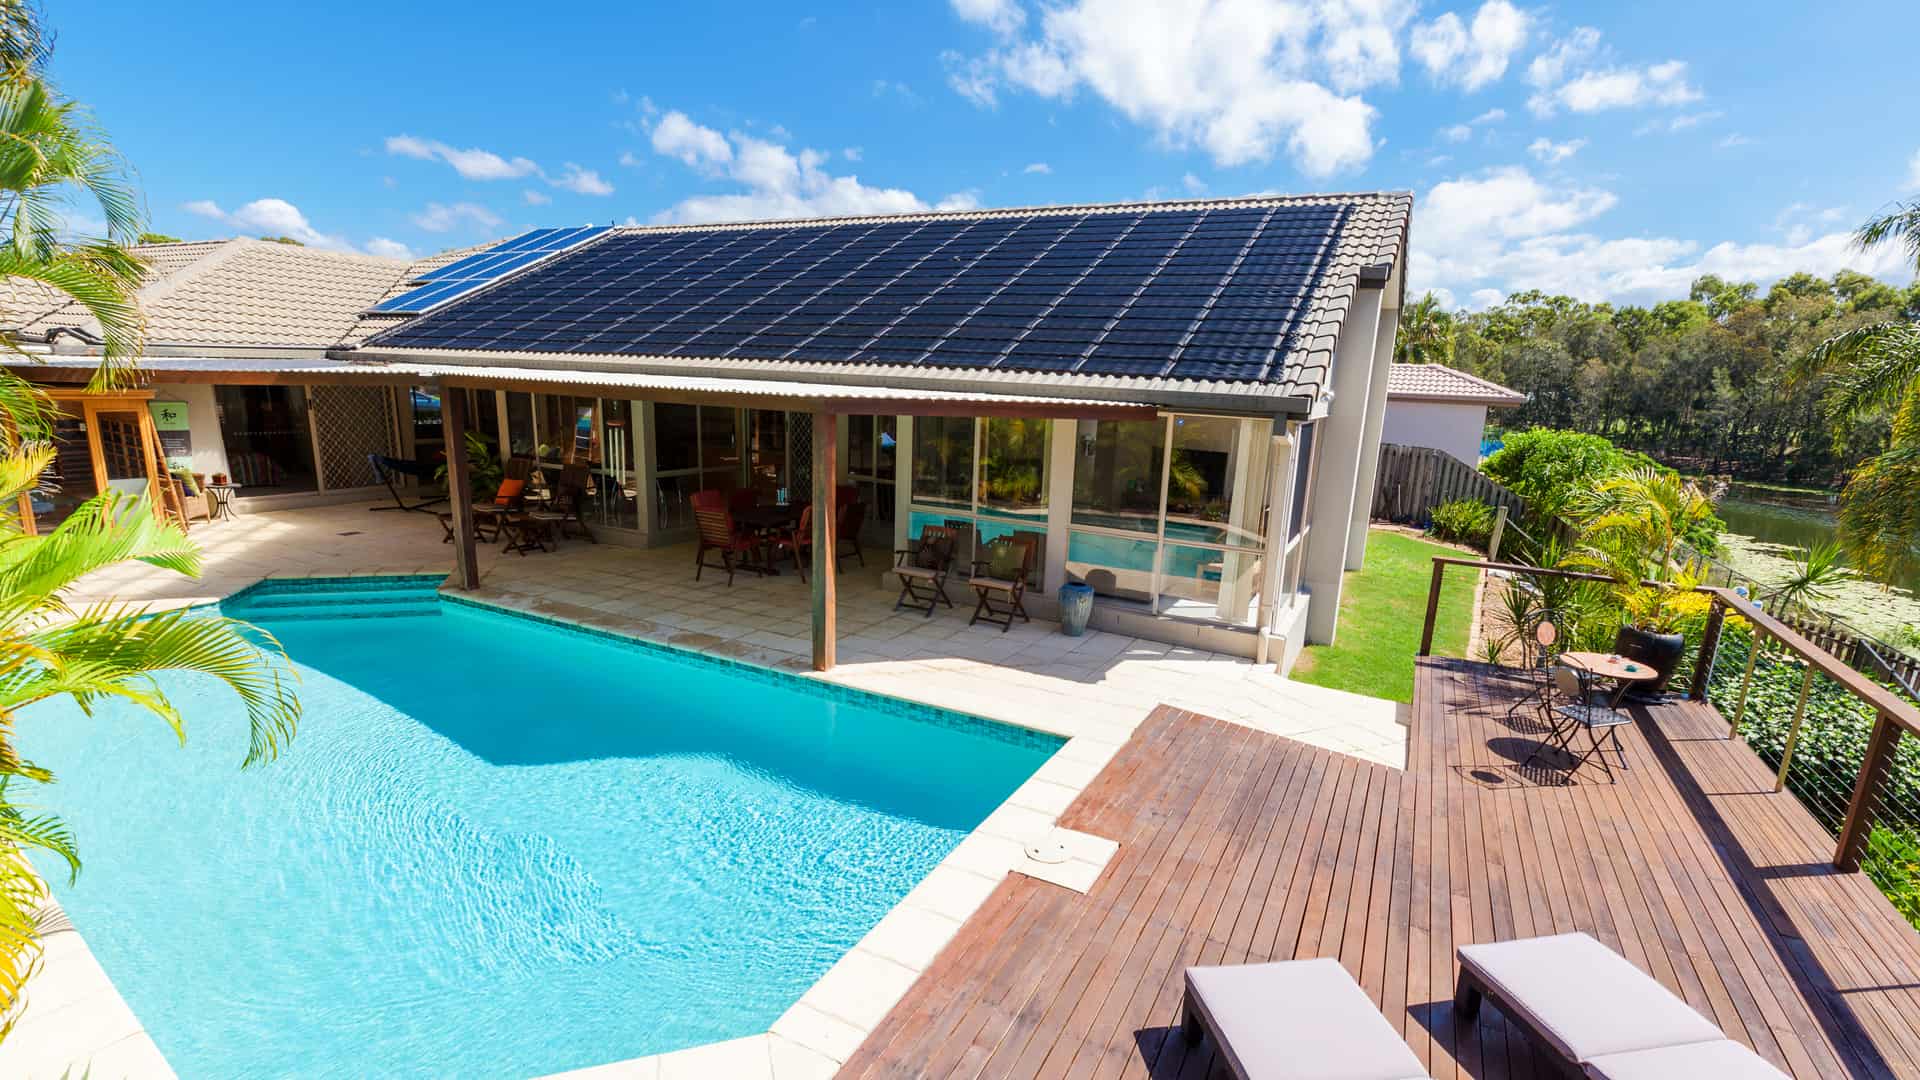 ¿El seguro hogar cubre placas solares?